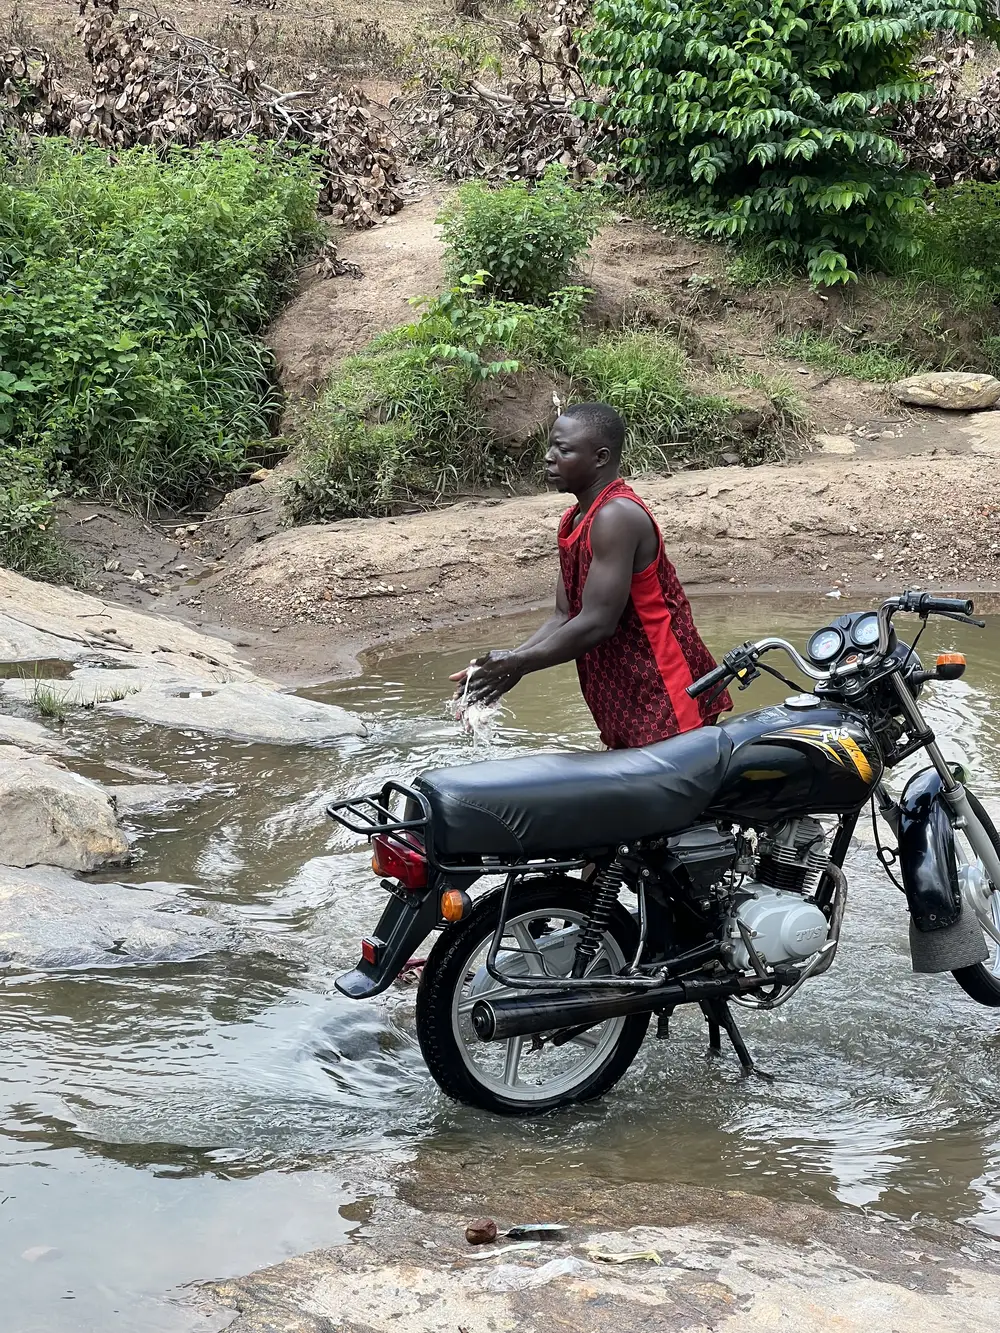 Man washing motorbike